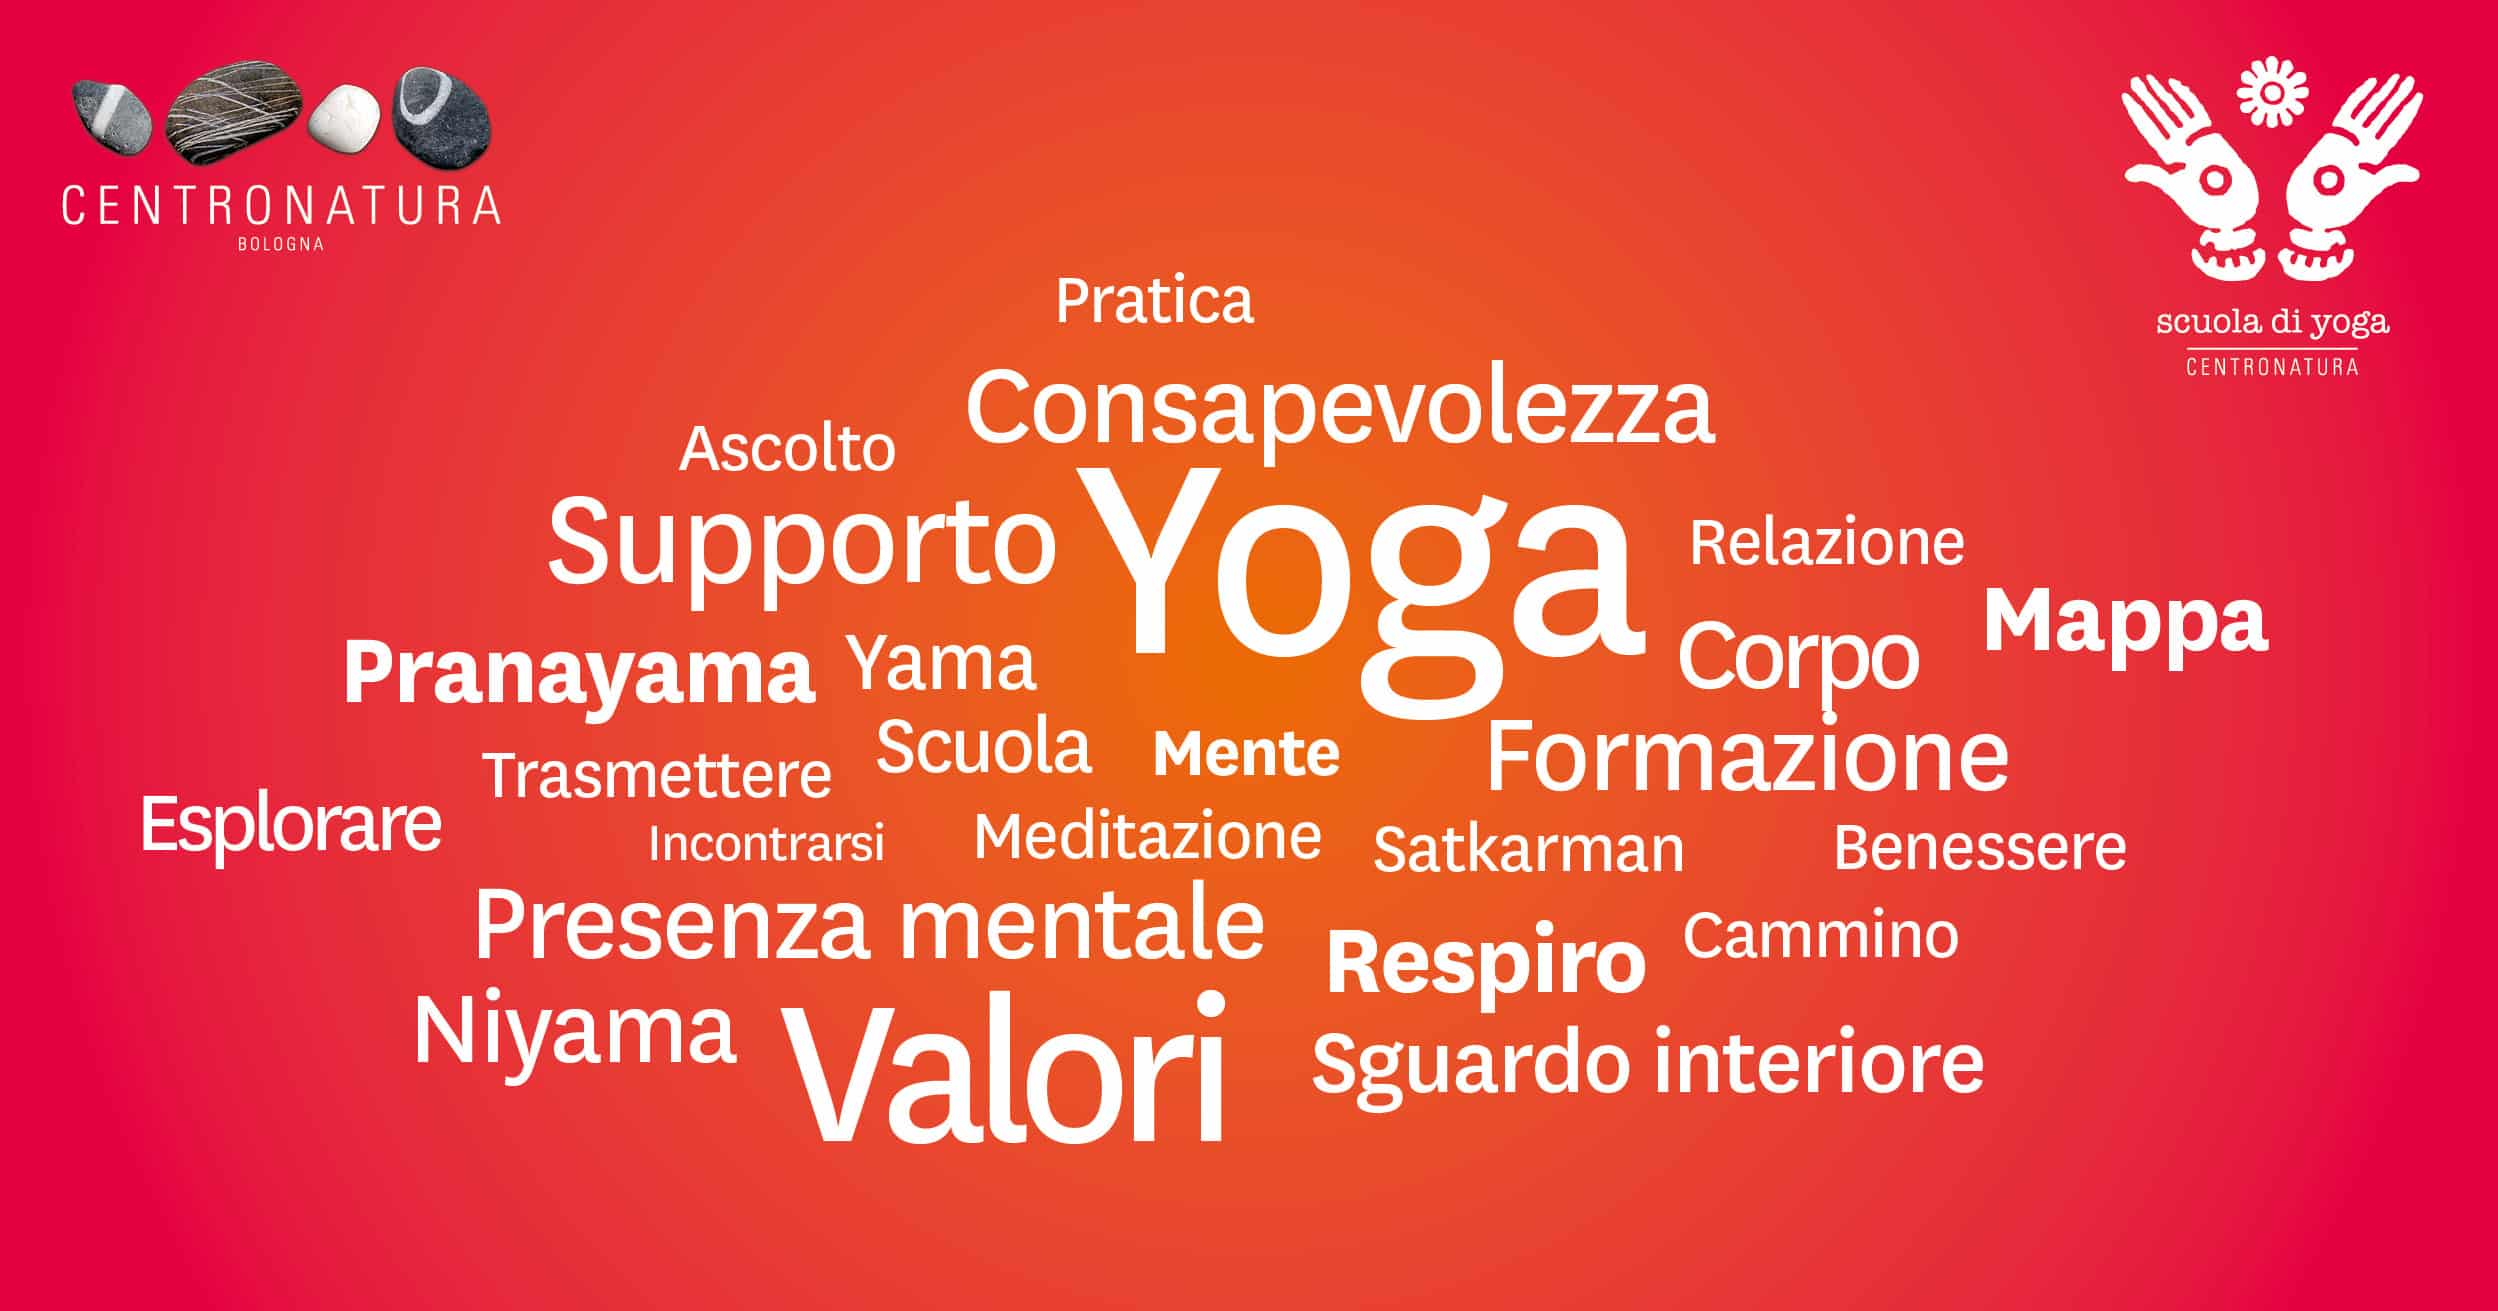 Al momento stai visualizzando Scuola di yoga Centro Natura: una mappa dei nostri valori.